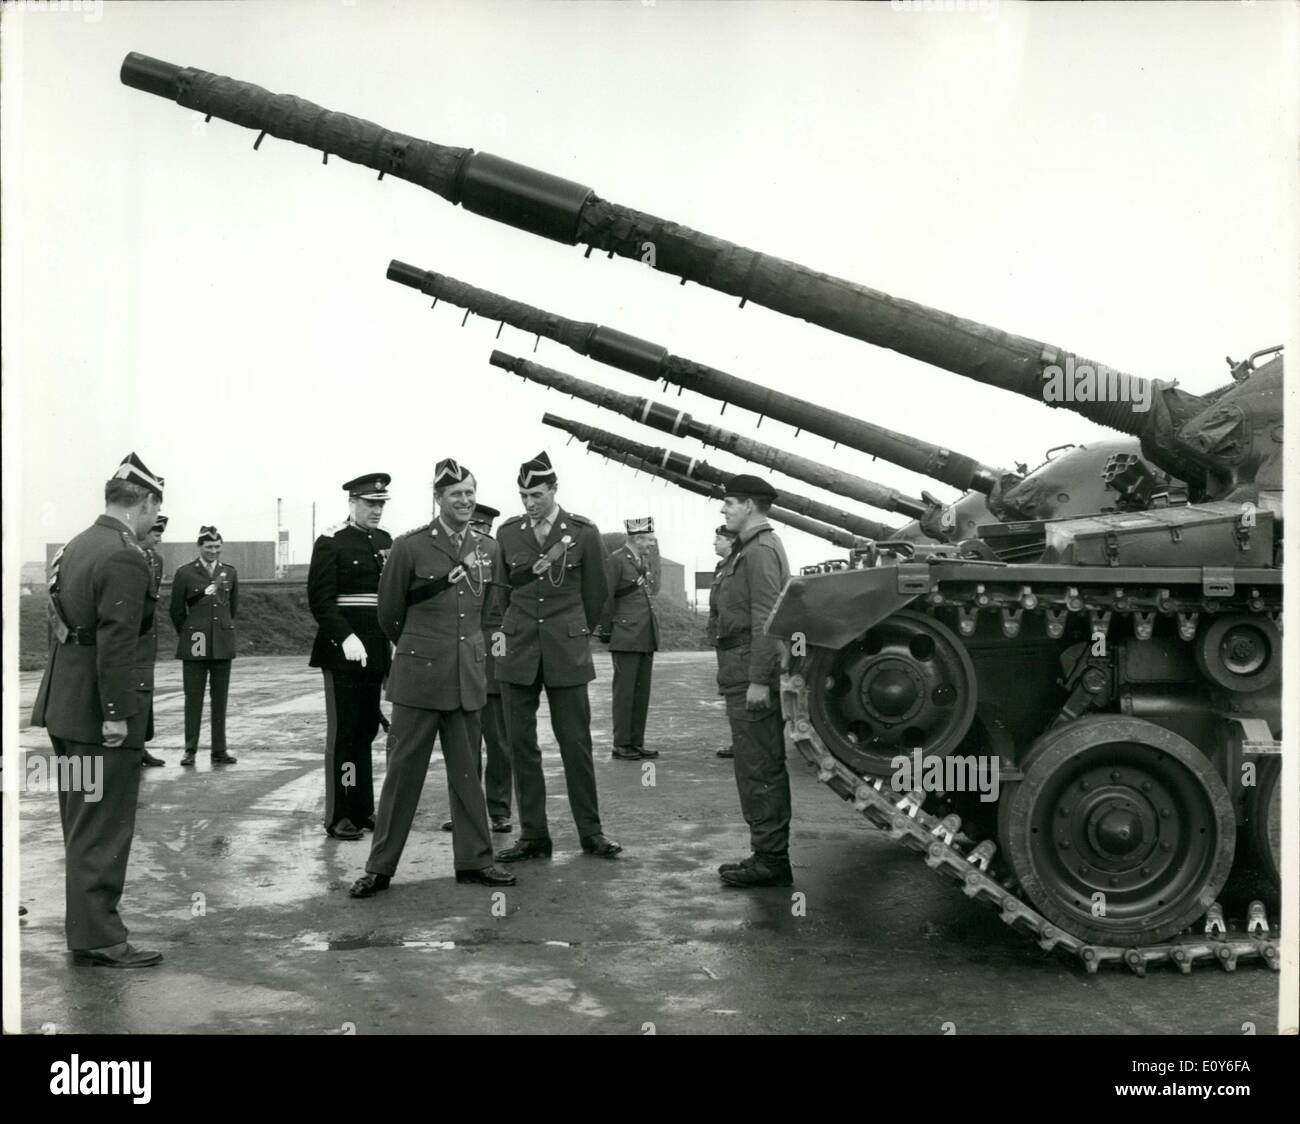 3. März 1969 - Prinz Philip treibt, Häuptling und Feuer Waffe: Prinz Philip gestern fuhr einen 51-Tonnen-Chieftain-Panzer und feuerte seine 120-mm-Geschütz, als er die Queen Royal Irish Hussars, er Oberst besuchte-in-Chief, bei Bovington, Dorset ist. Das Foto zeigt Prinz Philip Panzer-Besatzungen zu treffen, als er unter der riesigen Gewehrläufe, Spaziergänge, während eine Reihe von Chieftain-Panzer in Bovington gestern Inspektion gesehen. Stockfoto